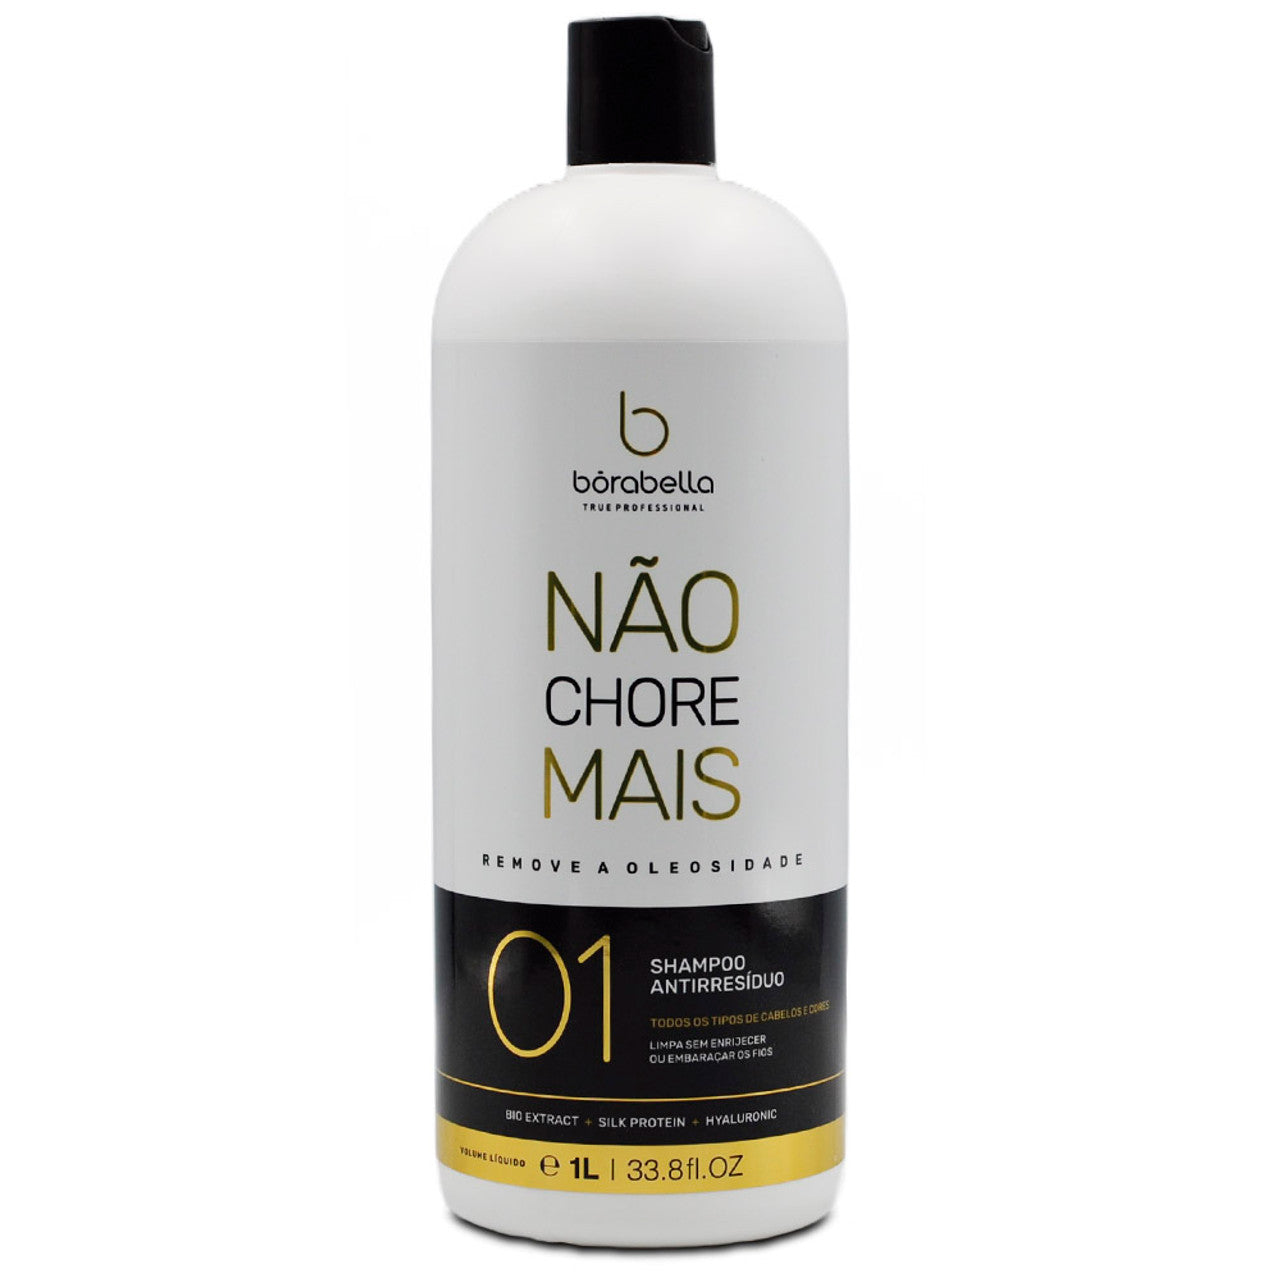 Borabella, Nao Chore Mais Step 1, Deep Cleansing Shampoo For Hair, 1L